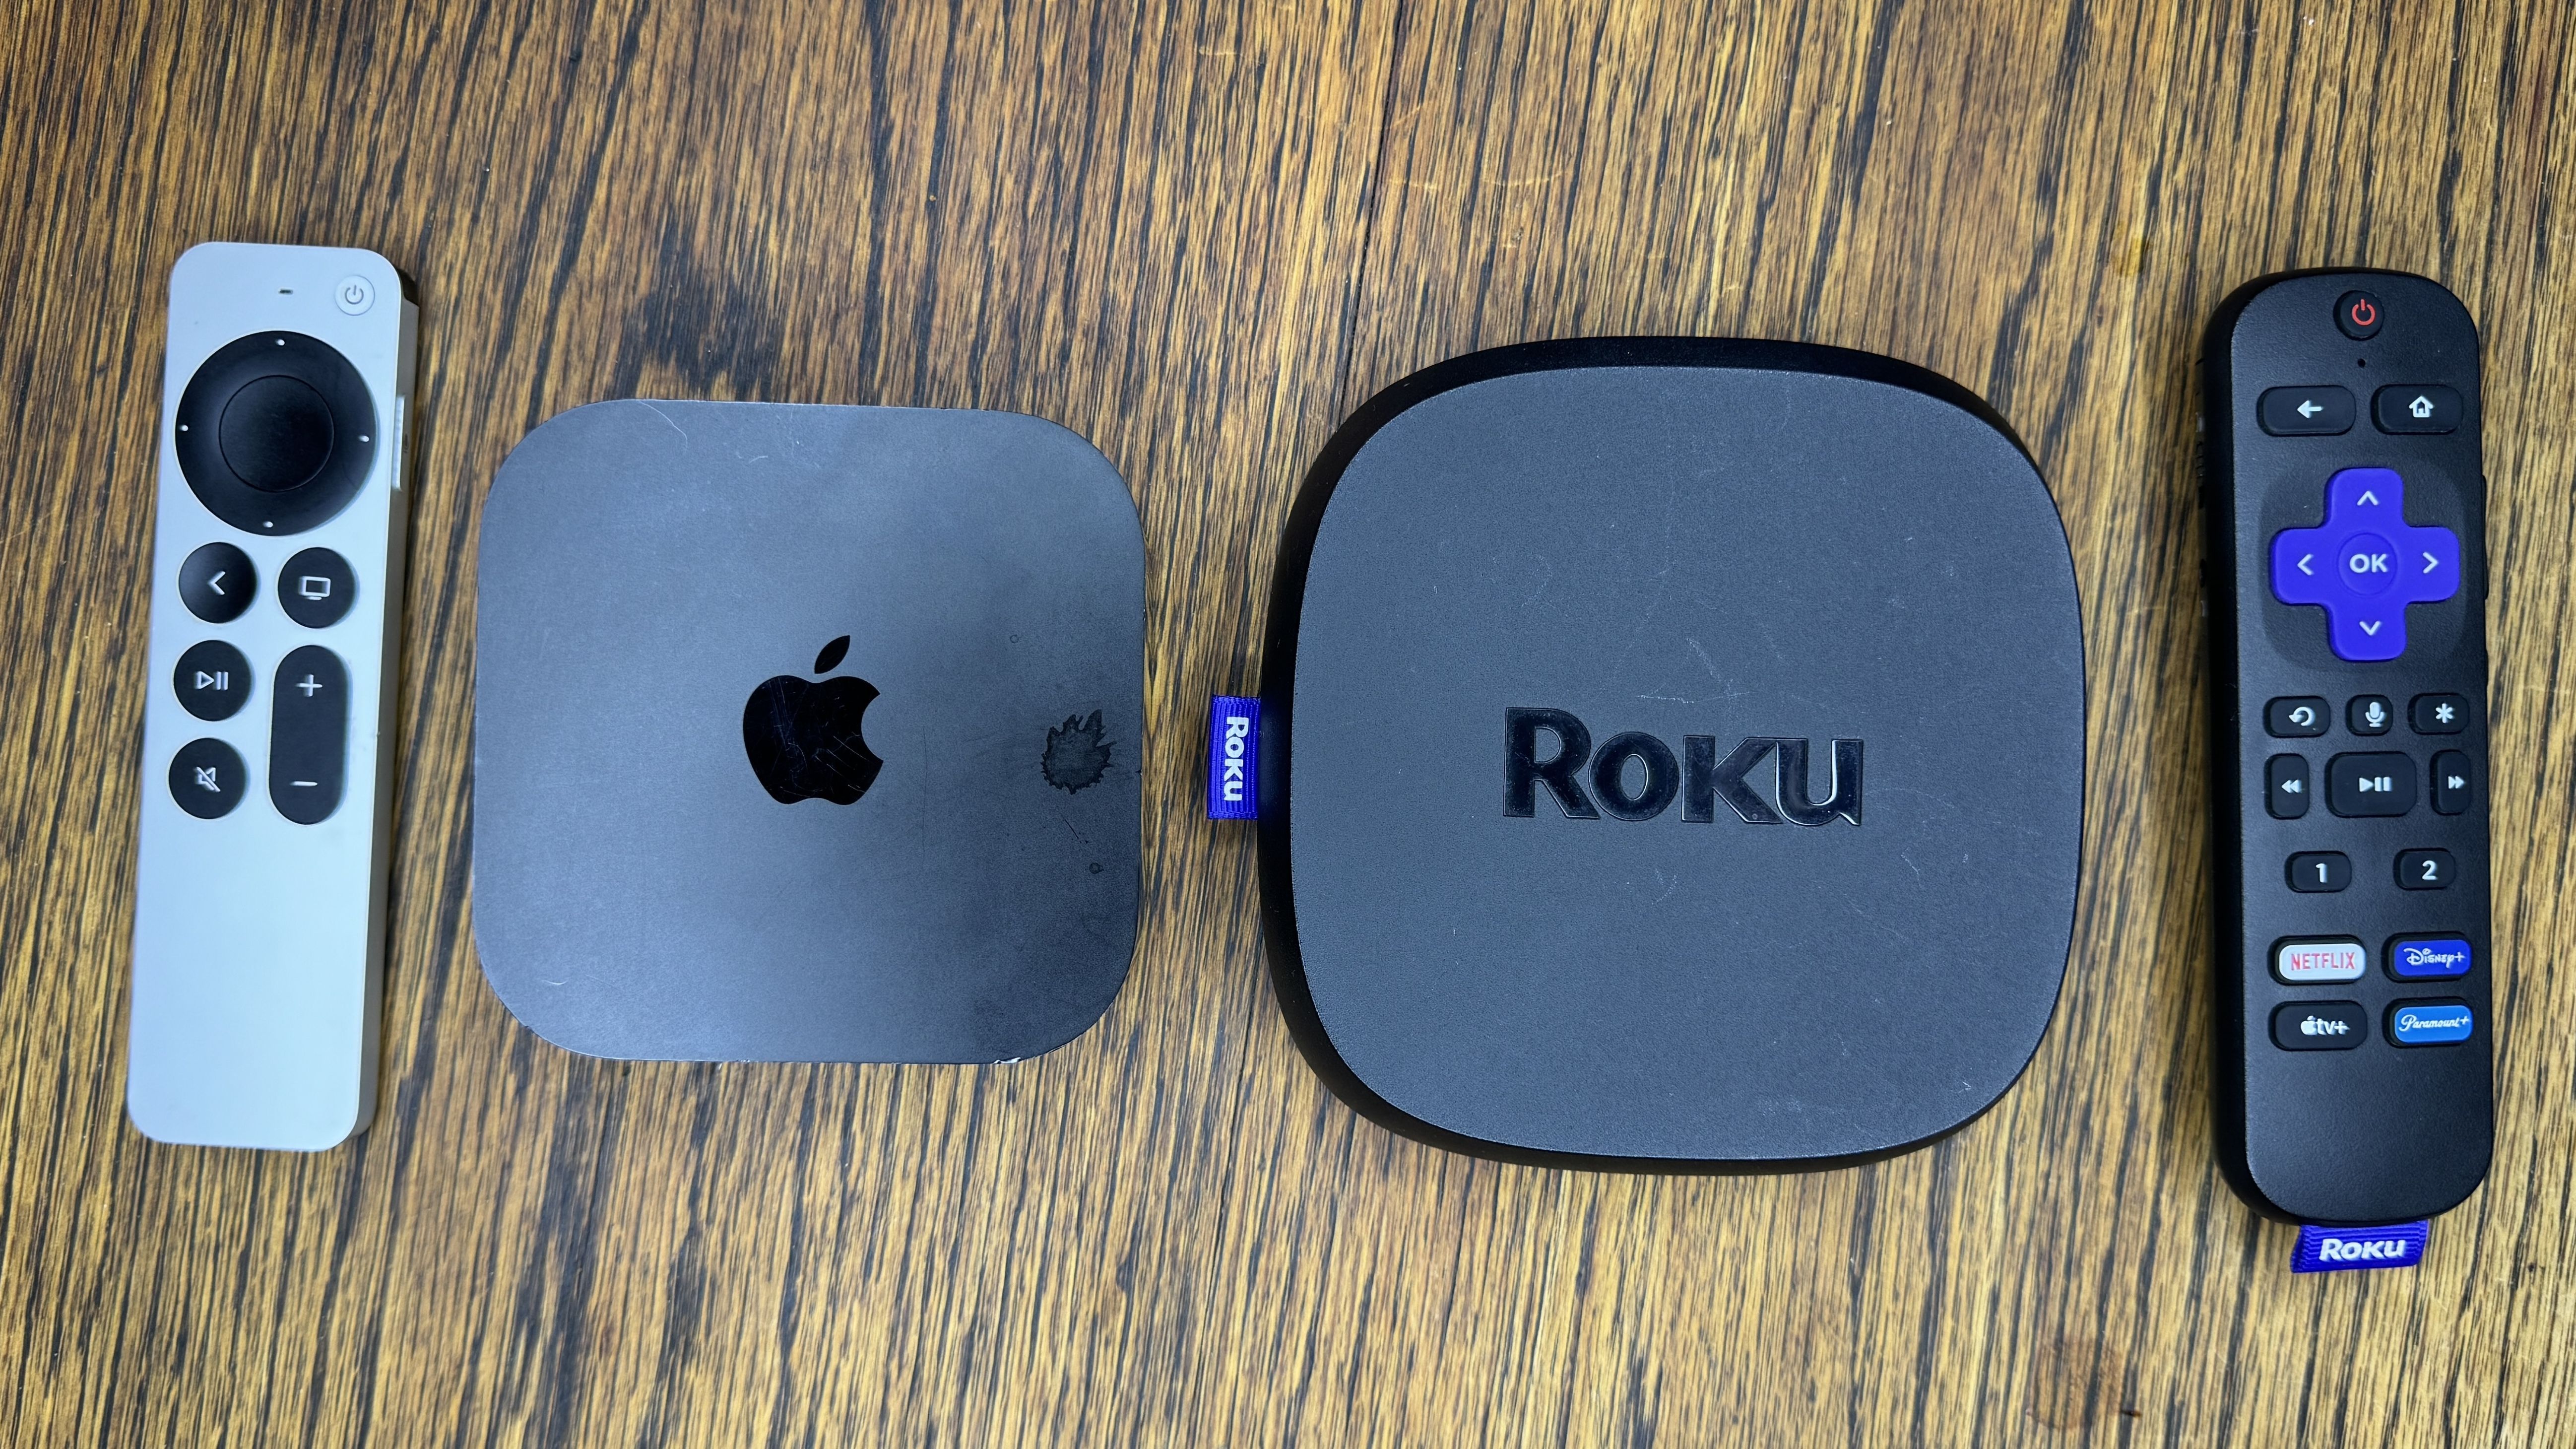 Roku Ultra (2022) Review: Same Streamer, Same Price, Better Voice